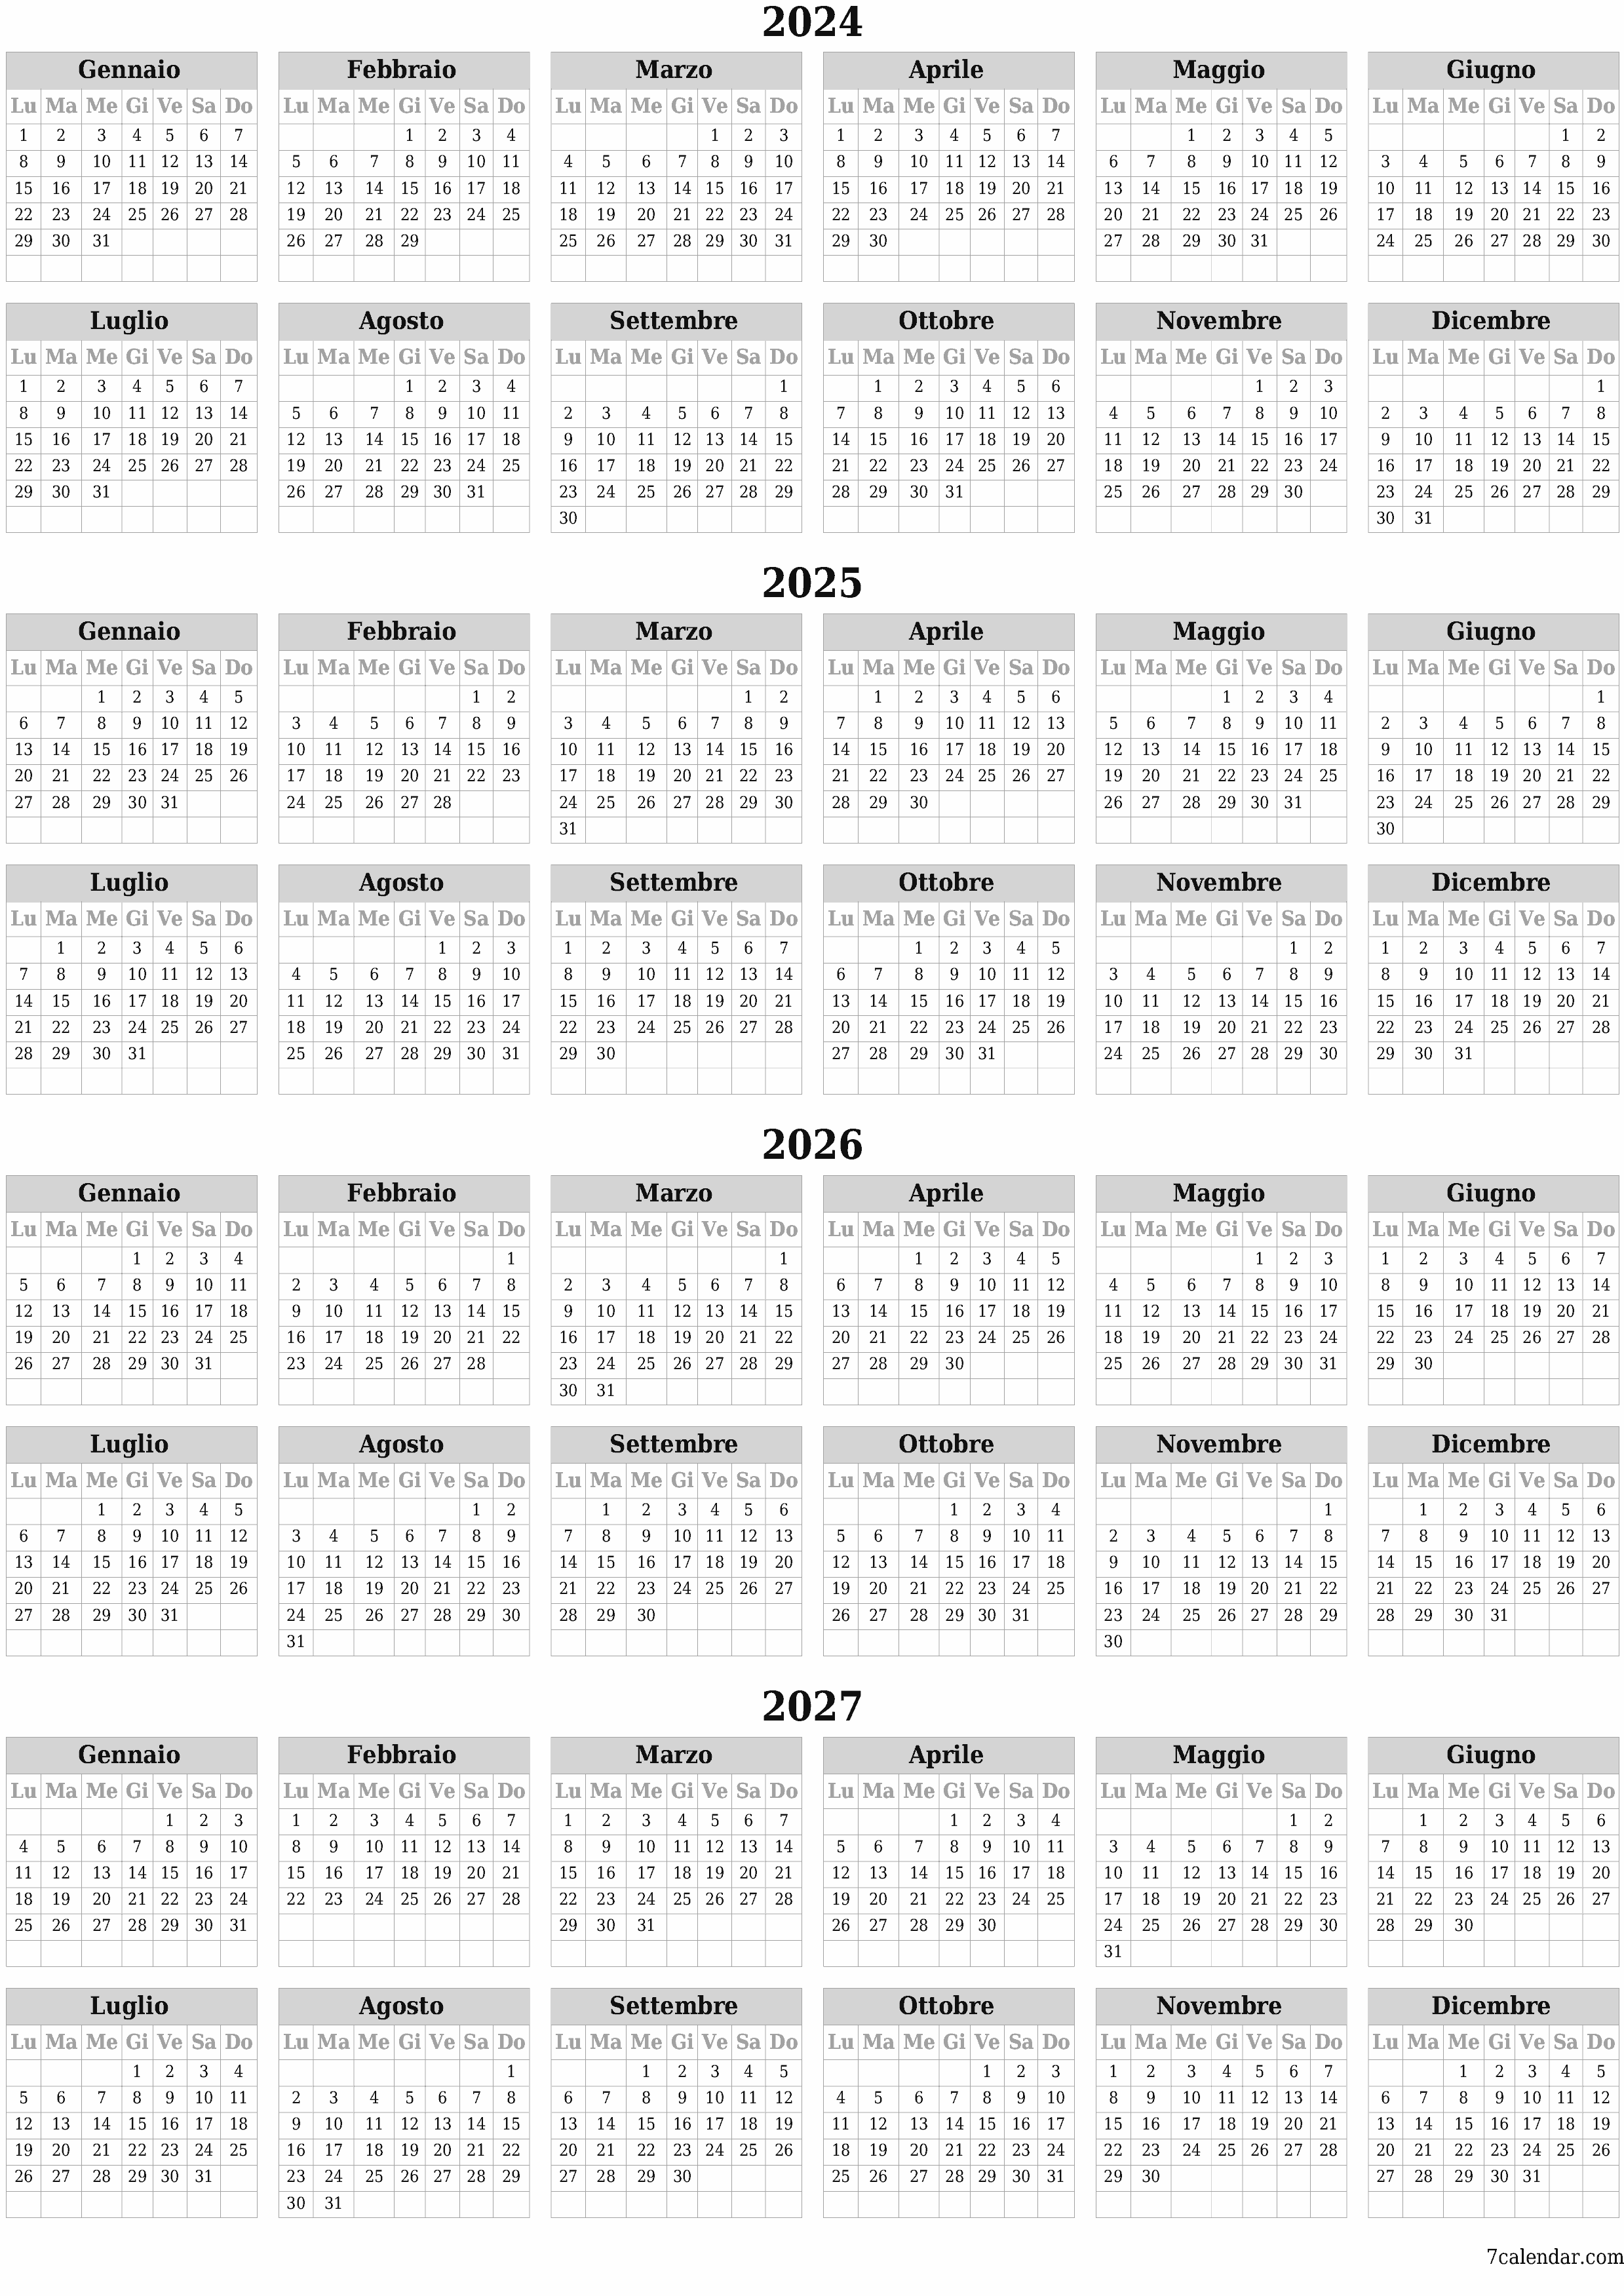  stampabile da parete modello di gratuitoverticale Annuale calendario Dicembre (Dic) 2024